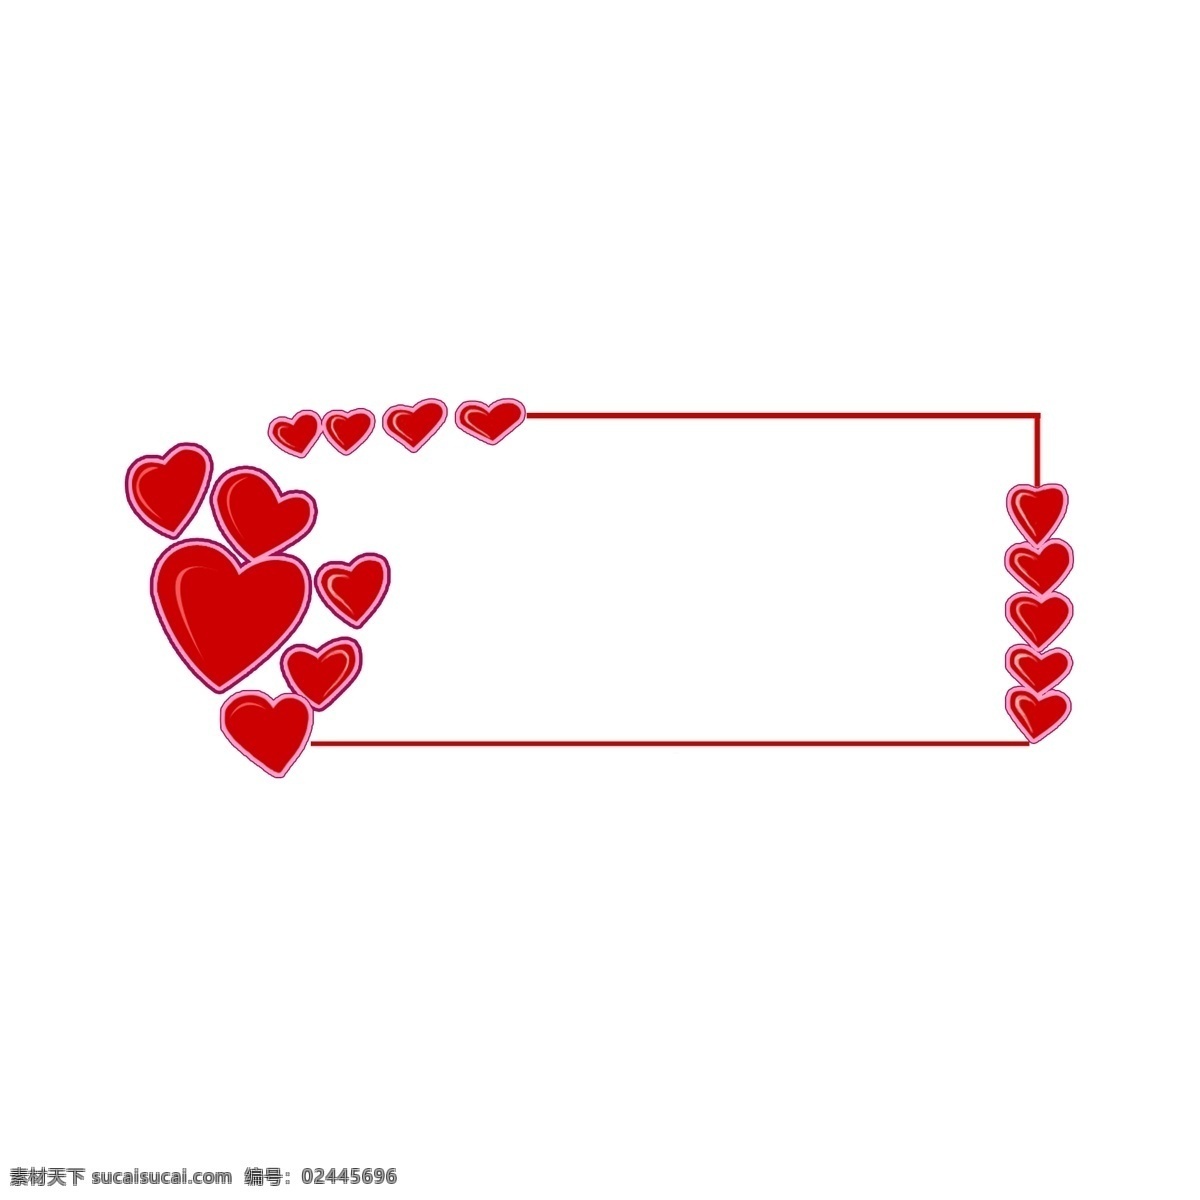 手绘 情人节 爱心 边框 红色边框 手绘边框 爱心边框 情人节边框